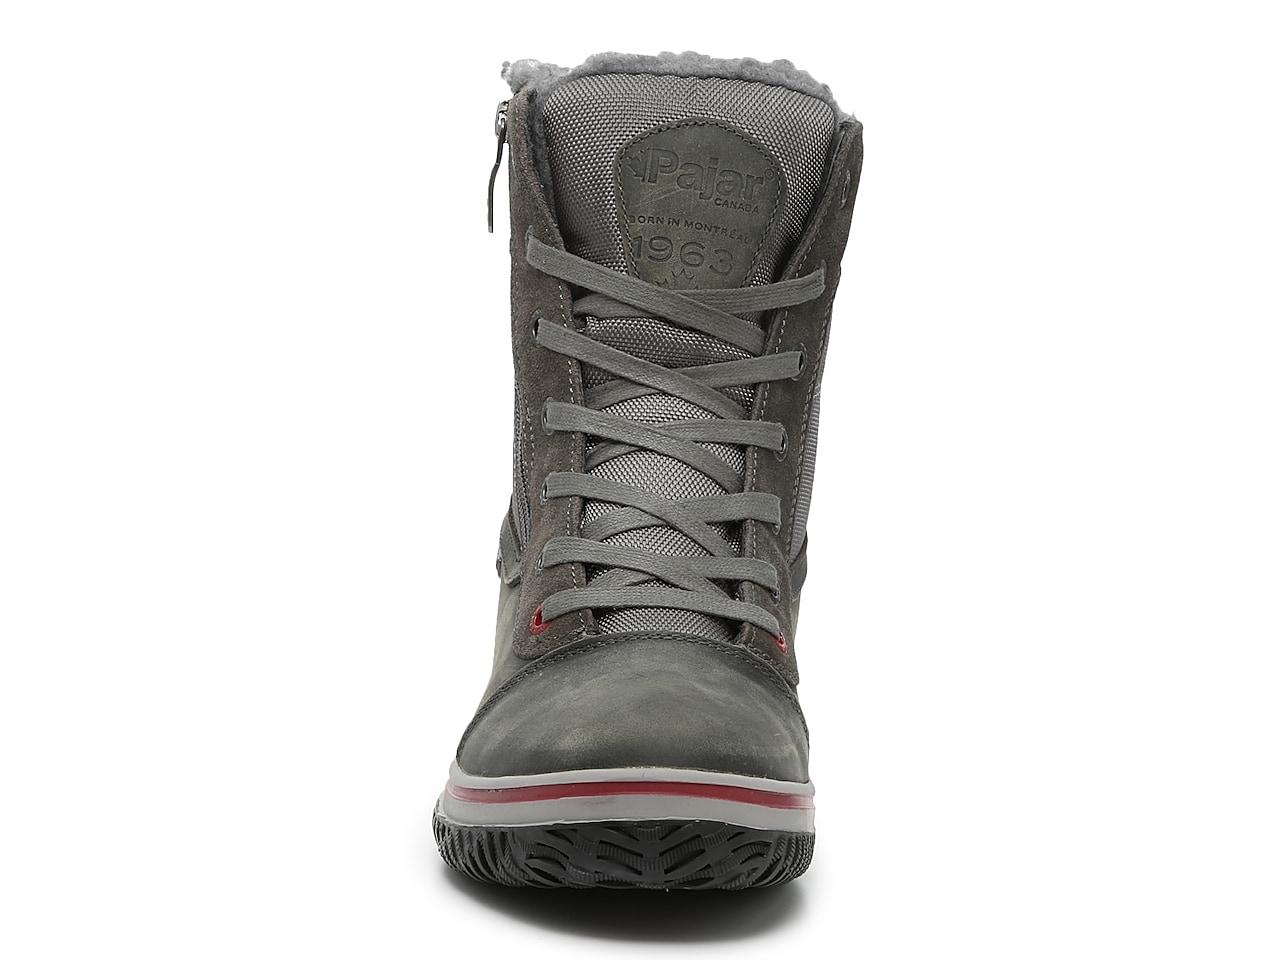 Pajar Trooper 2.0 Boot in Grey (Gray) for Men - Lyst